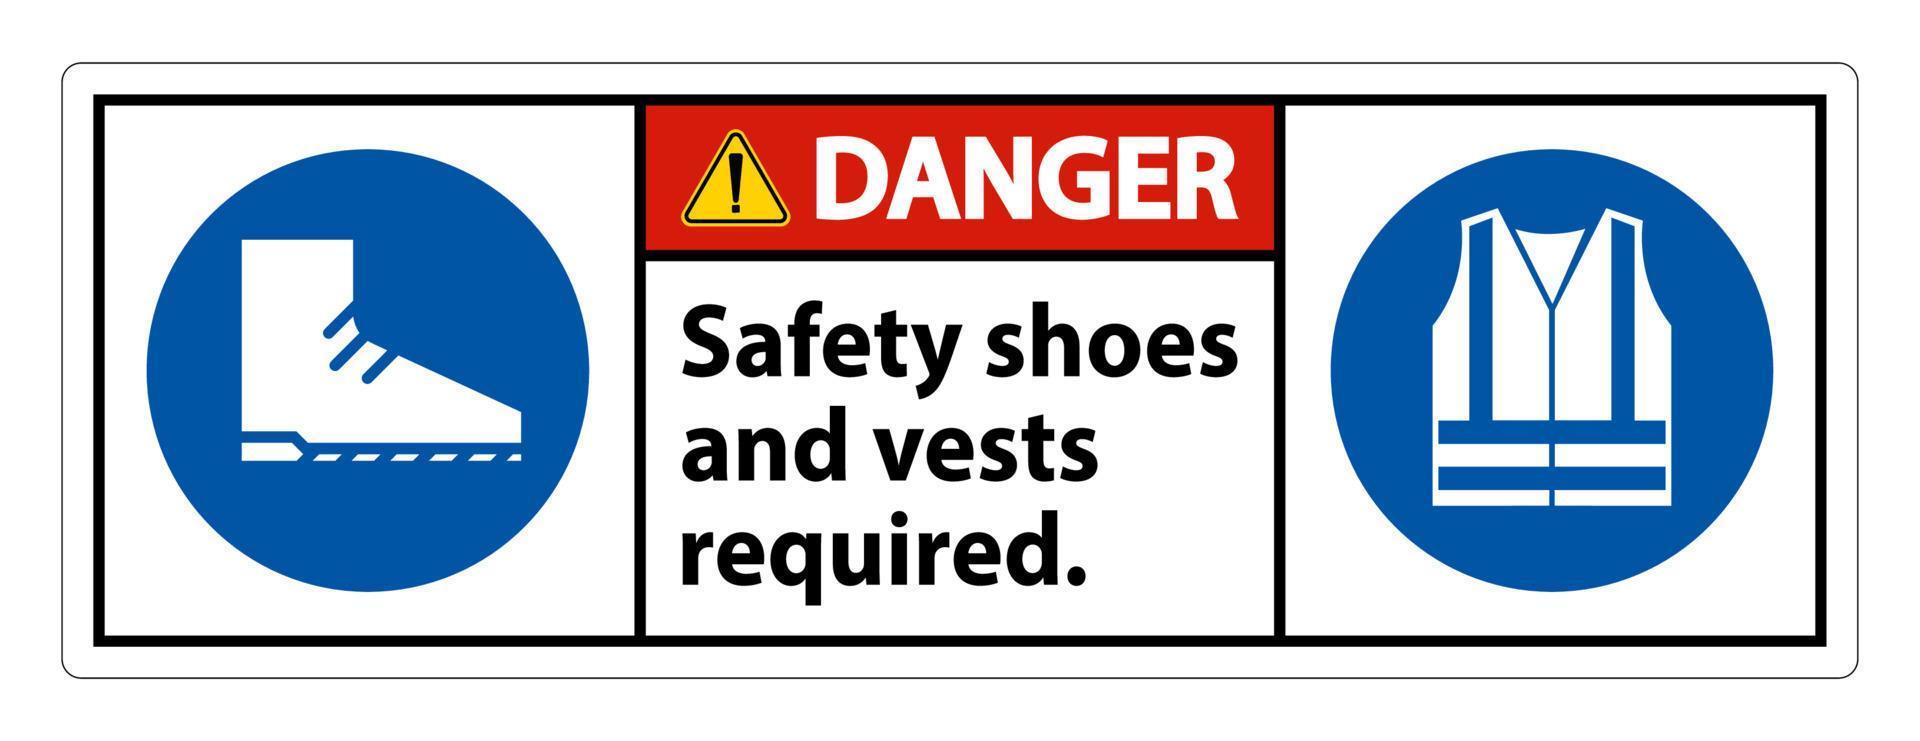 Señal de peligro Se requieren zapatos y chaleco de seguridad con símbolos de ppe sobre fondo blanco, ilustración vectorial vector